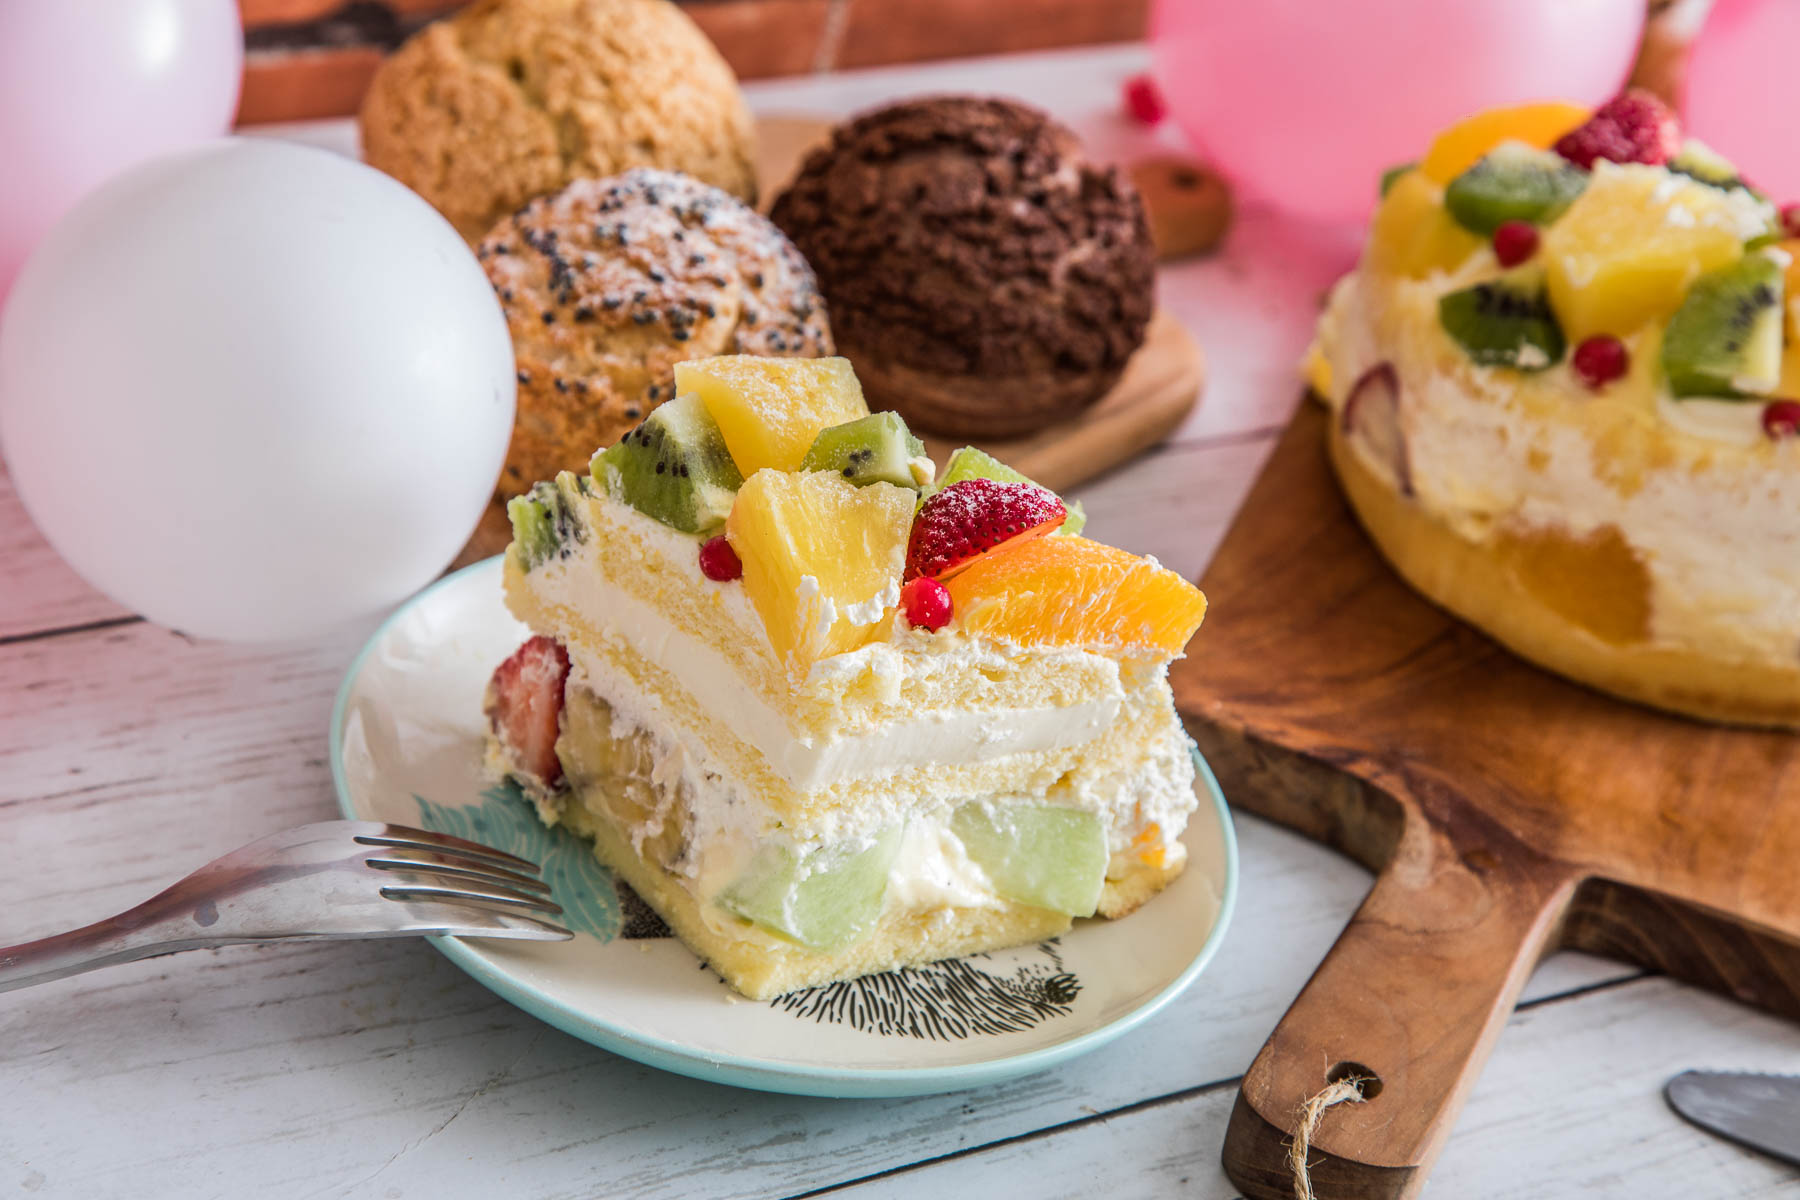 台北蛋糕,台北水果蛋糕,母親節蛋糕,生日蛋糕,宅配母親節蛋糕,母親節蛋糕推薦,Nozomi Bakery 松江總店,Nozomi Bakery,Nozomi Bakery 蛋糕